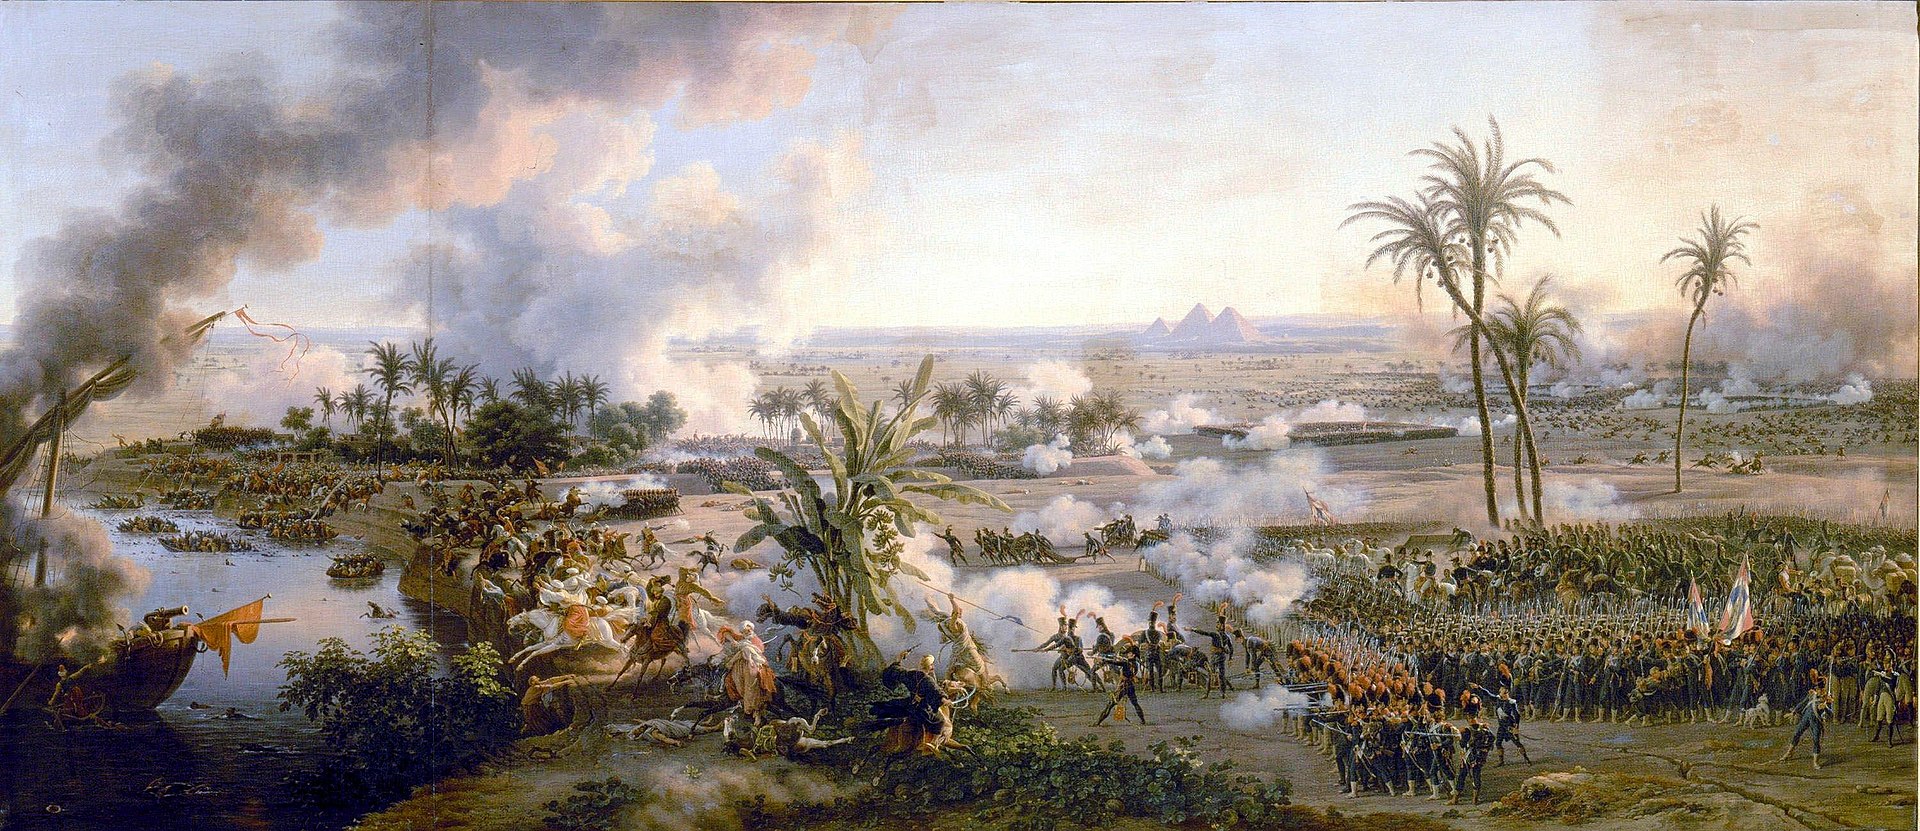 لوحة معركة الأهرام